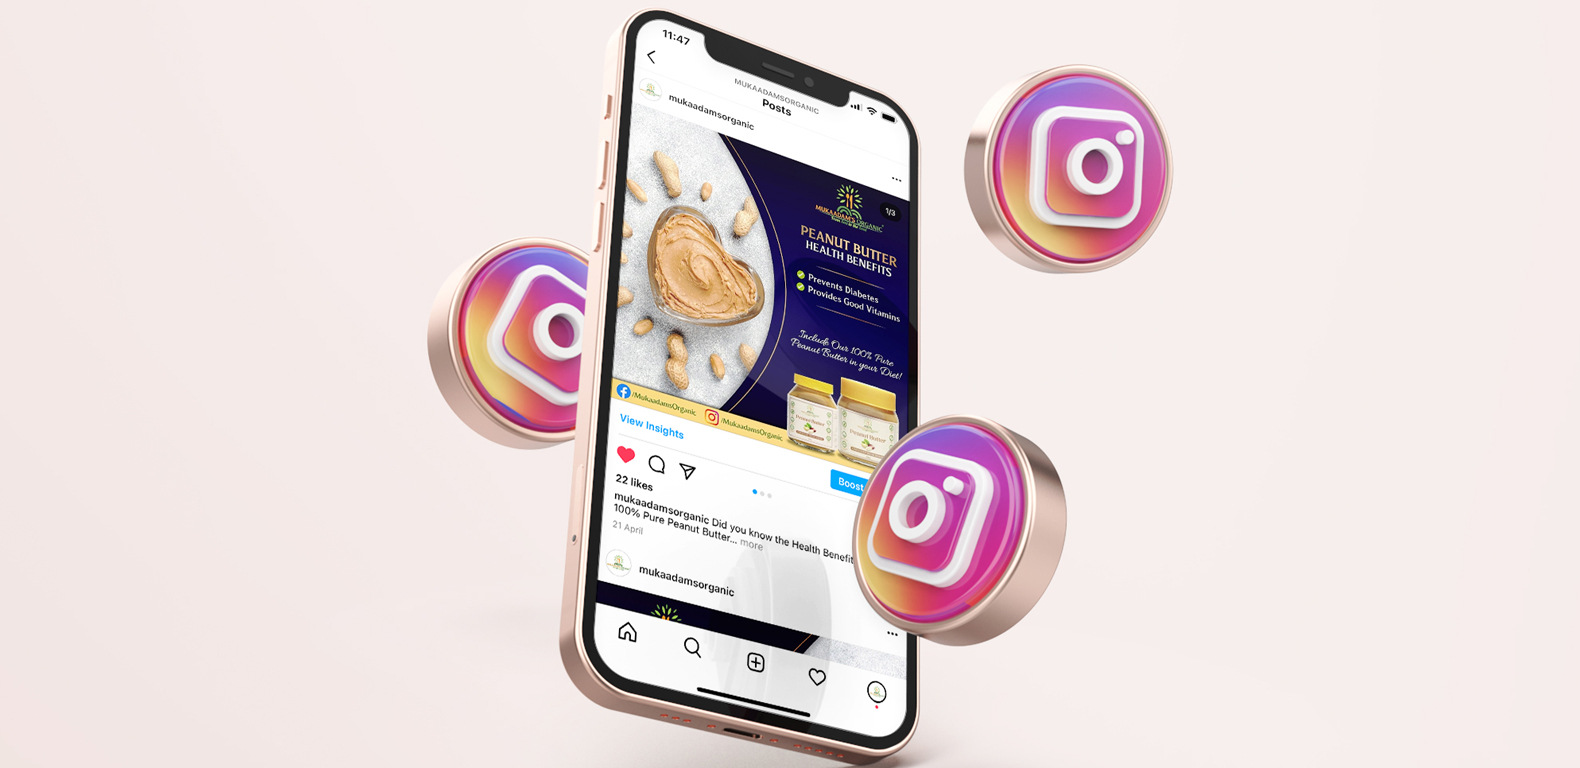 social-media-marketing-mukaadams-organic-Instagram-posts-3